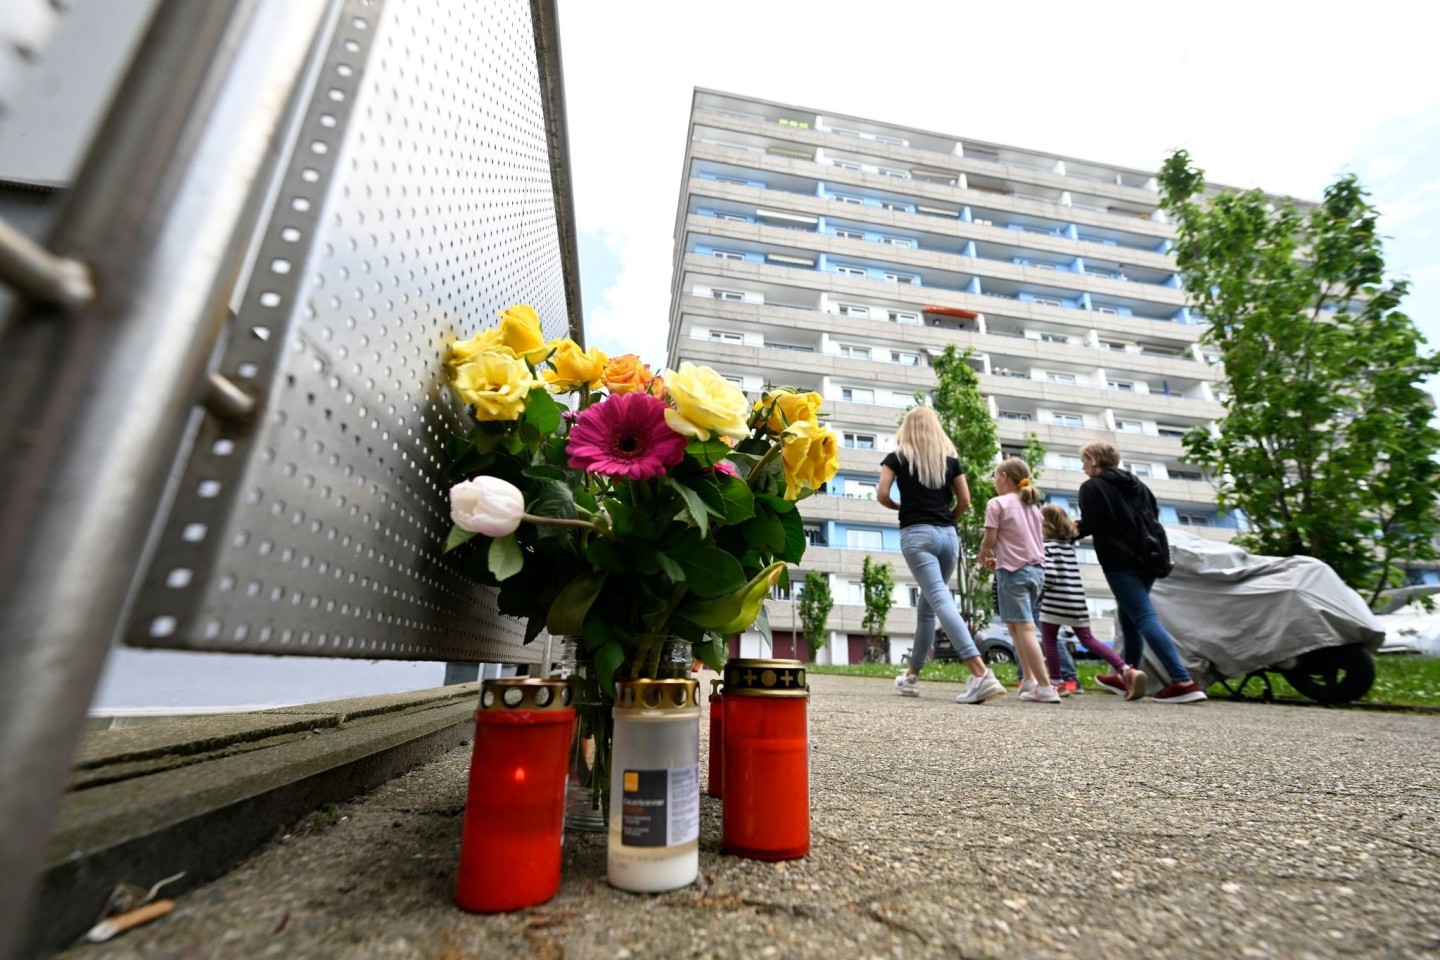 Bürger haben zum Gedenken an die Opfer der Explosion in einem Hochhaus im Mai Kerzen und Blumen niedergelegt.